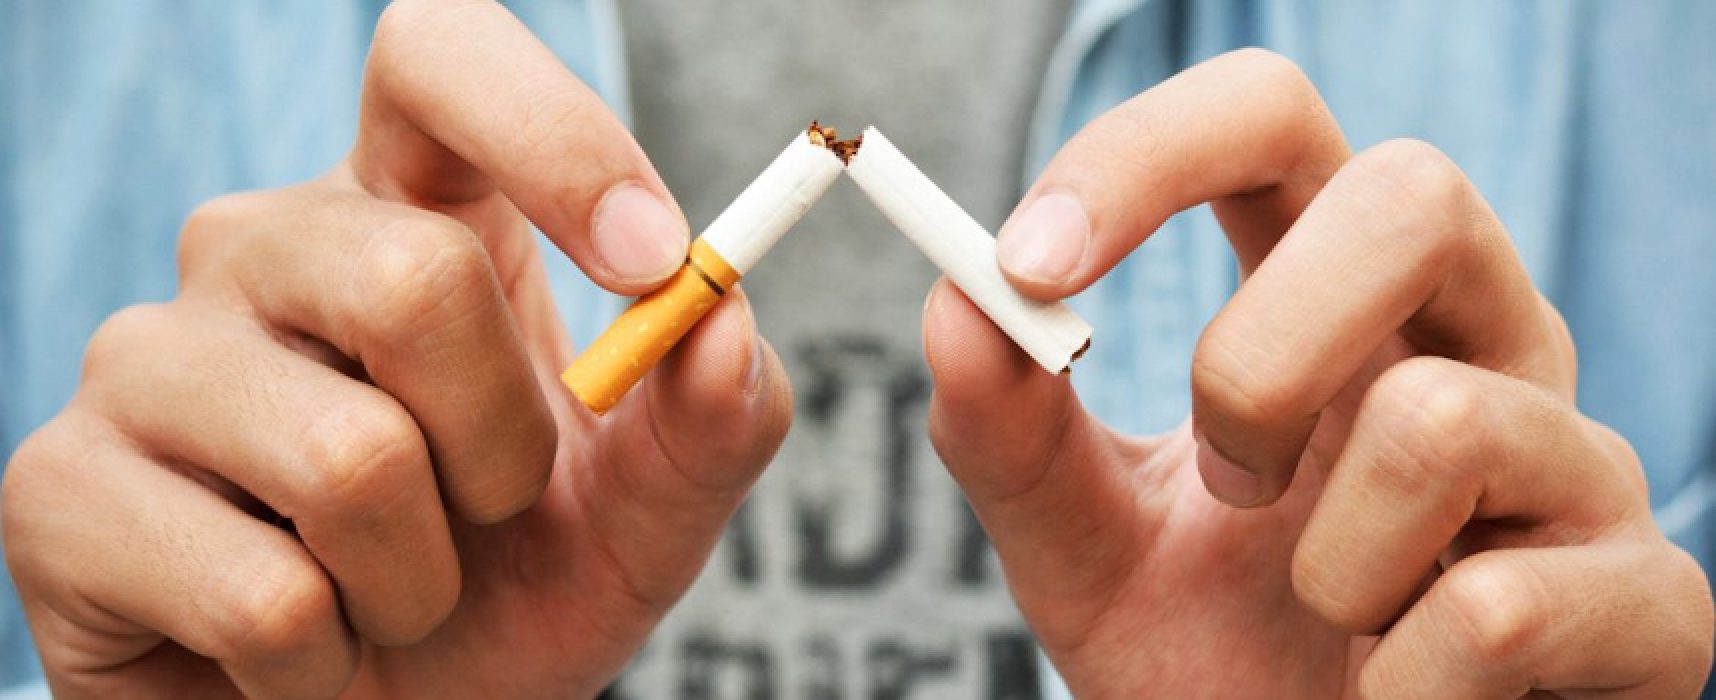 Giornata mondiale senza tabacco, l’iniziativa solidale della Lilt Bat / DETTAGLI